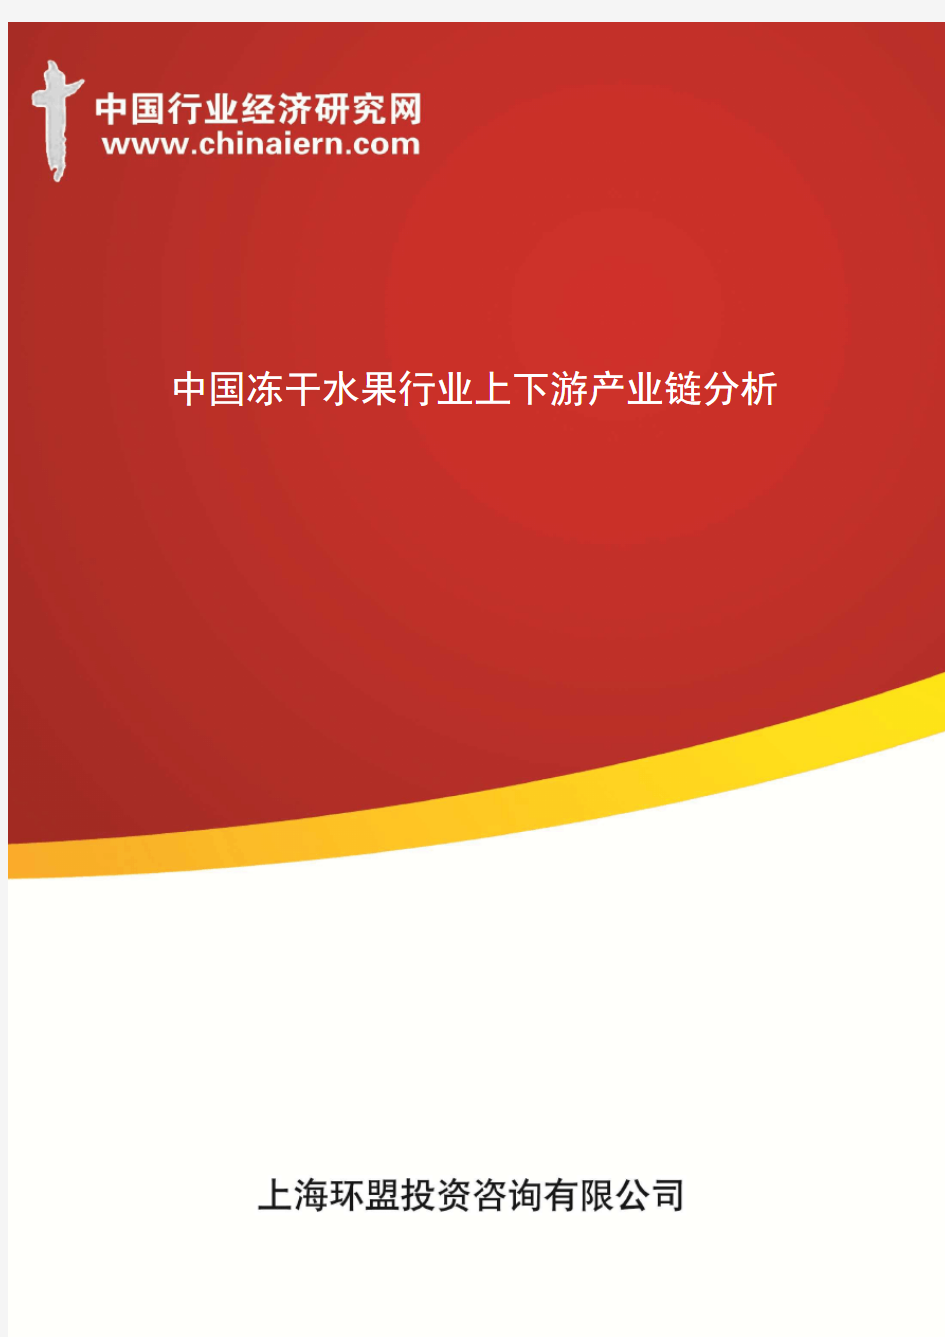 中国冻干水果行业上下游产业链分析(上海环盟)